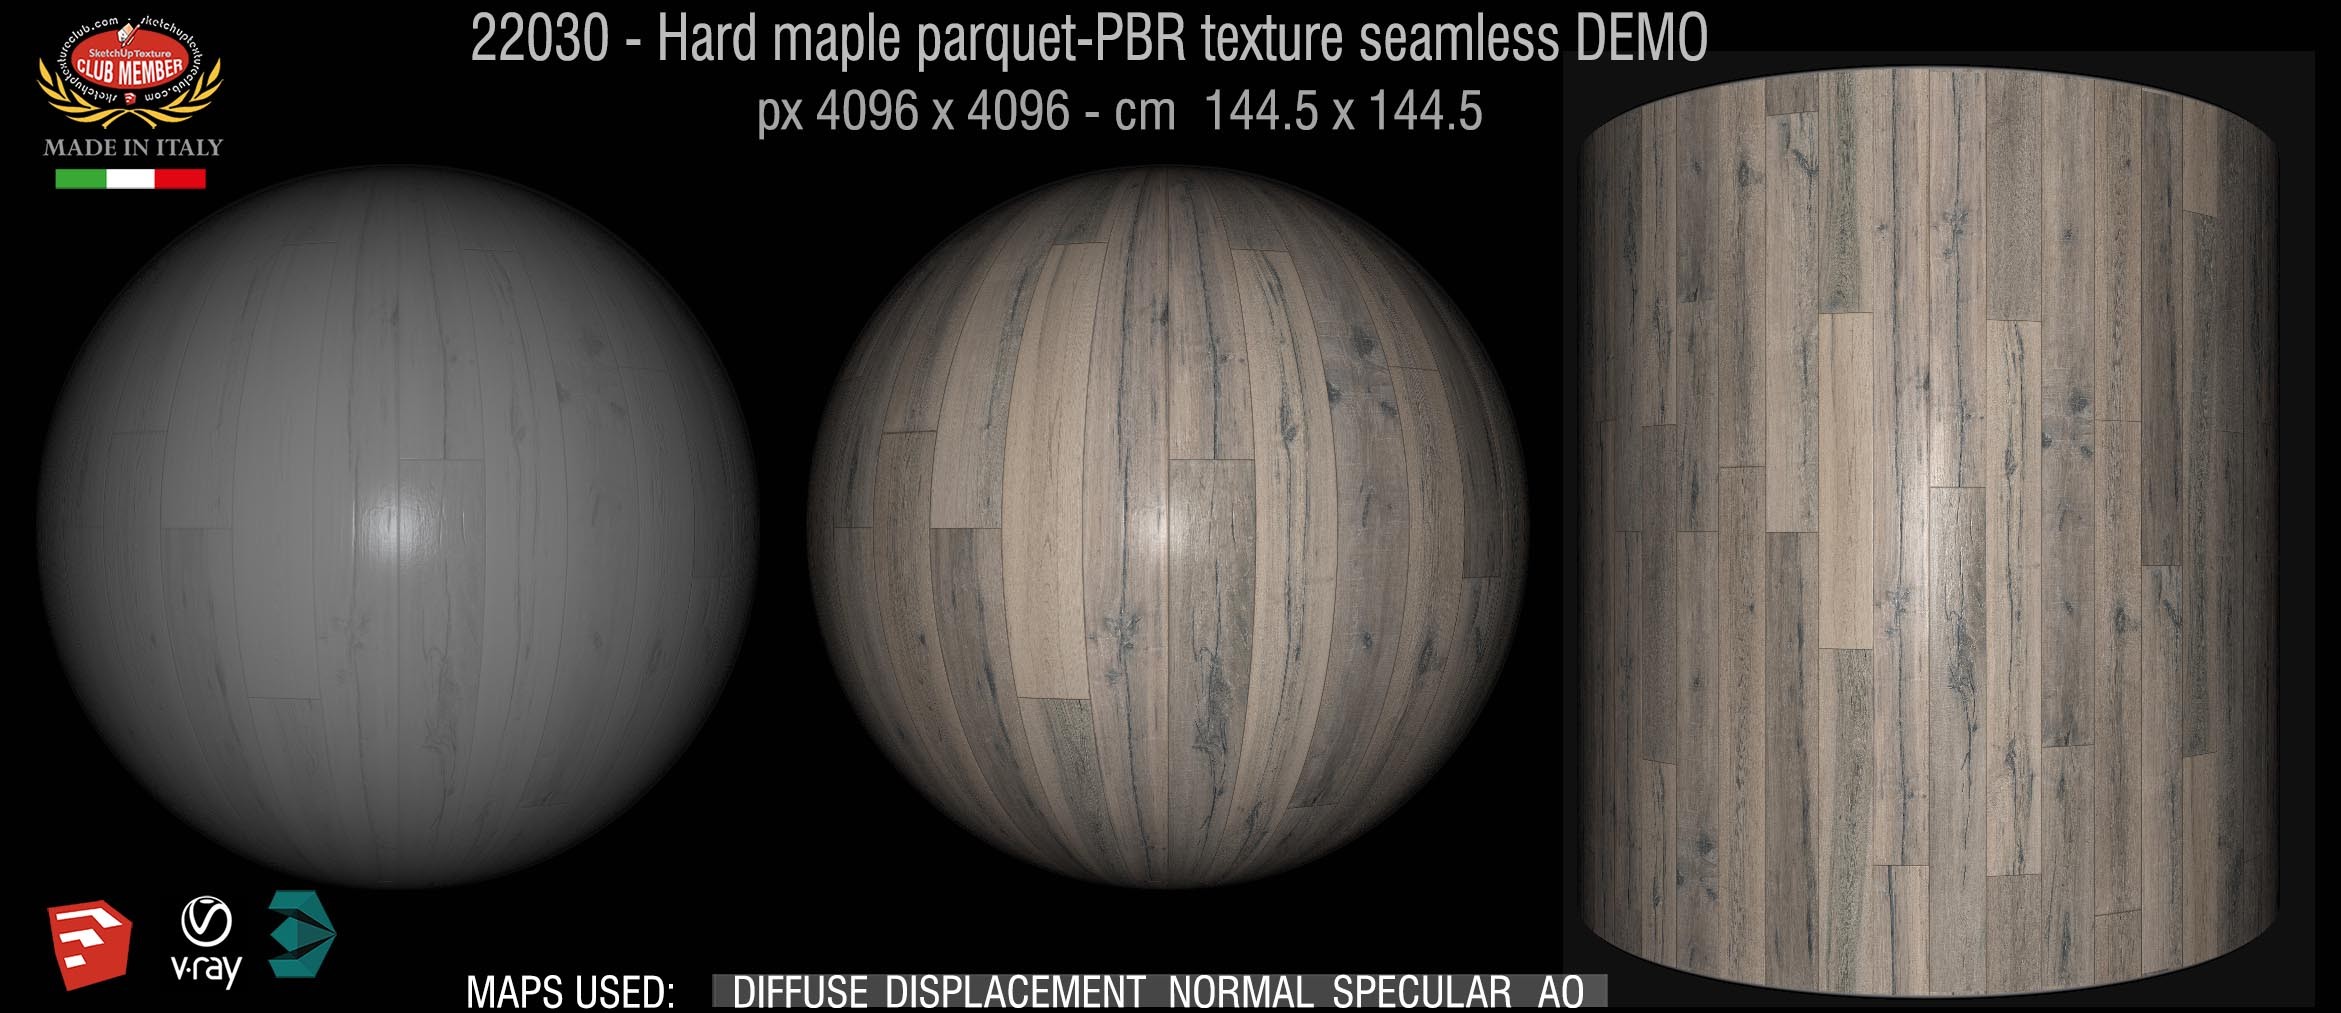 22030 Hard maple parquet-PBR texture seamless DEMO